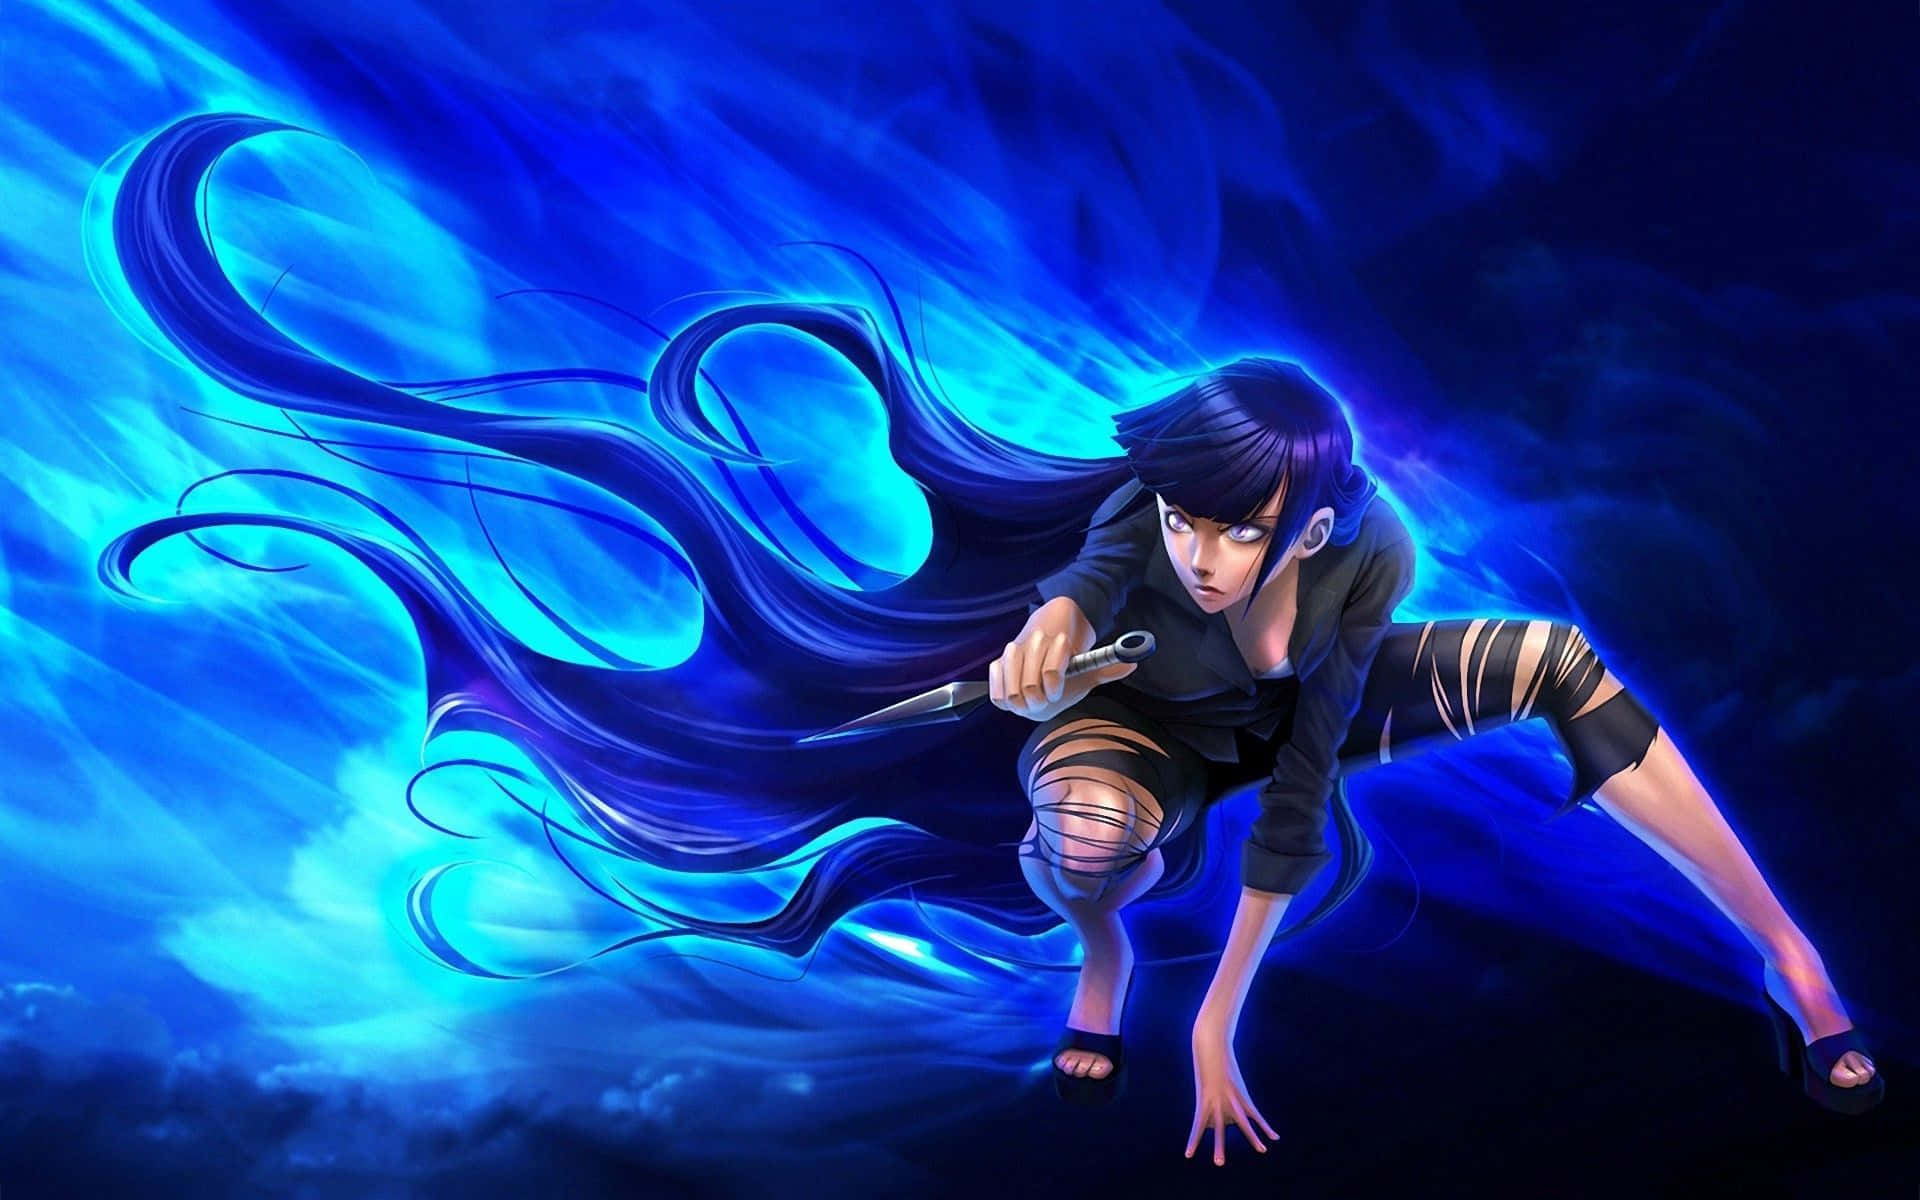 Hinatahyuga Naruto Arte Digital En Azul Neón. Fondo de pantalla